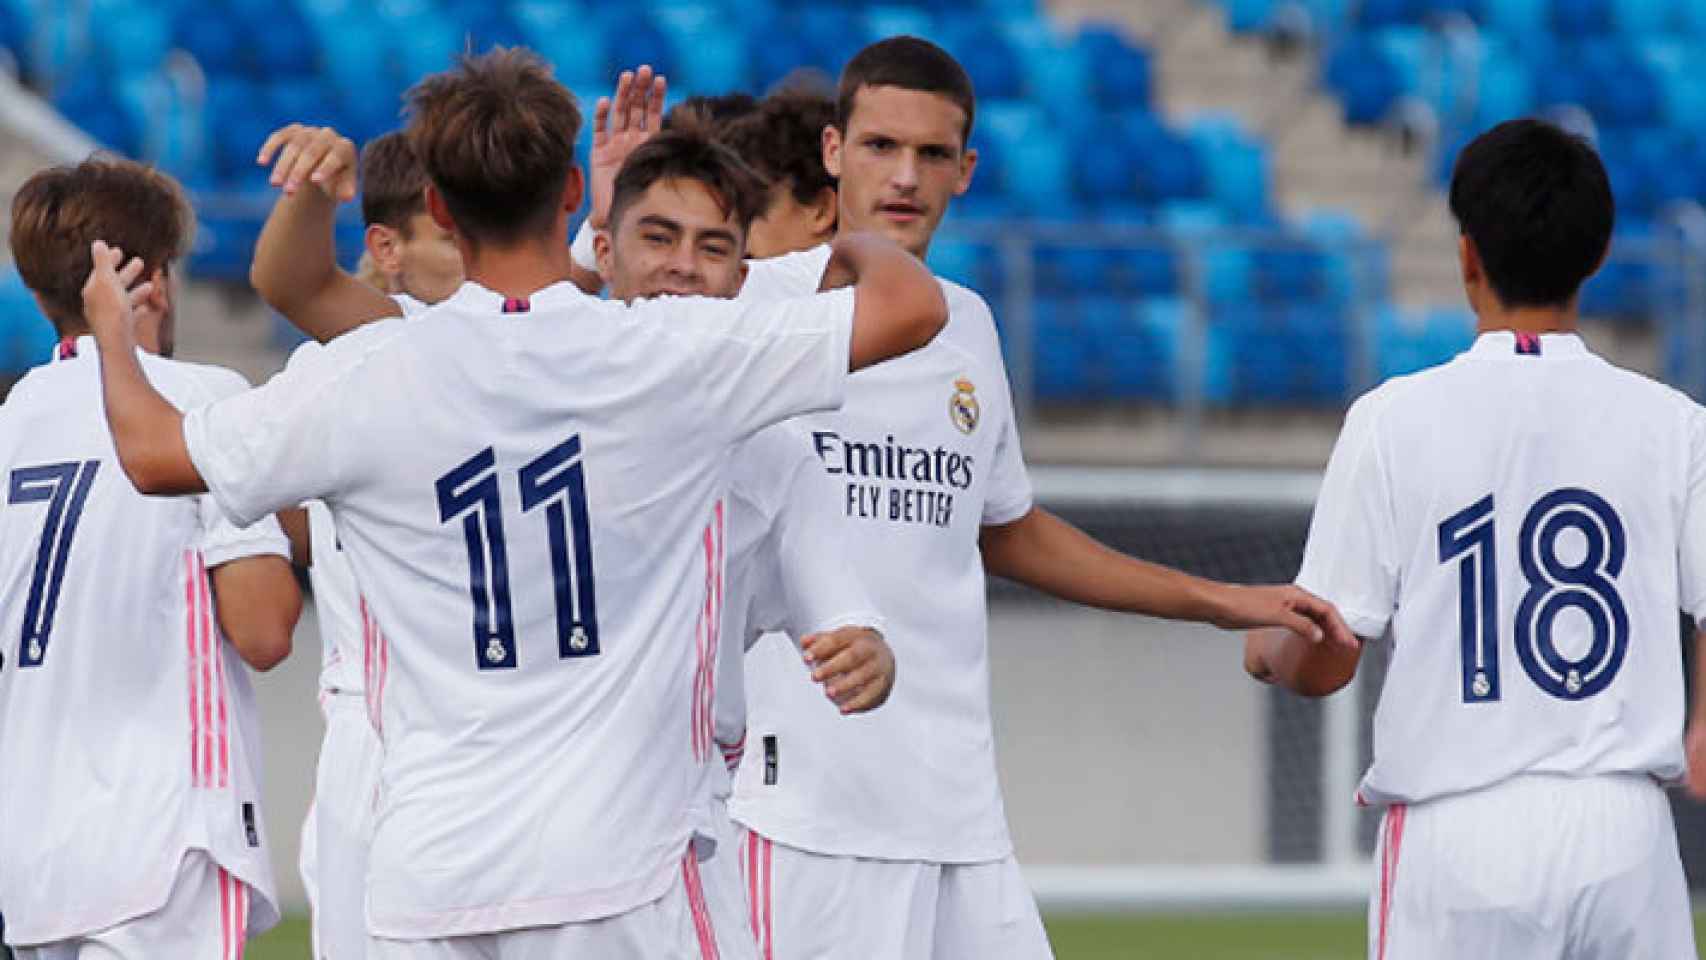 Los jugadores del Real Madrid Juvenil A 2020/2021 celebran un gol en la pretemporada